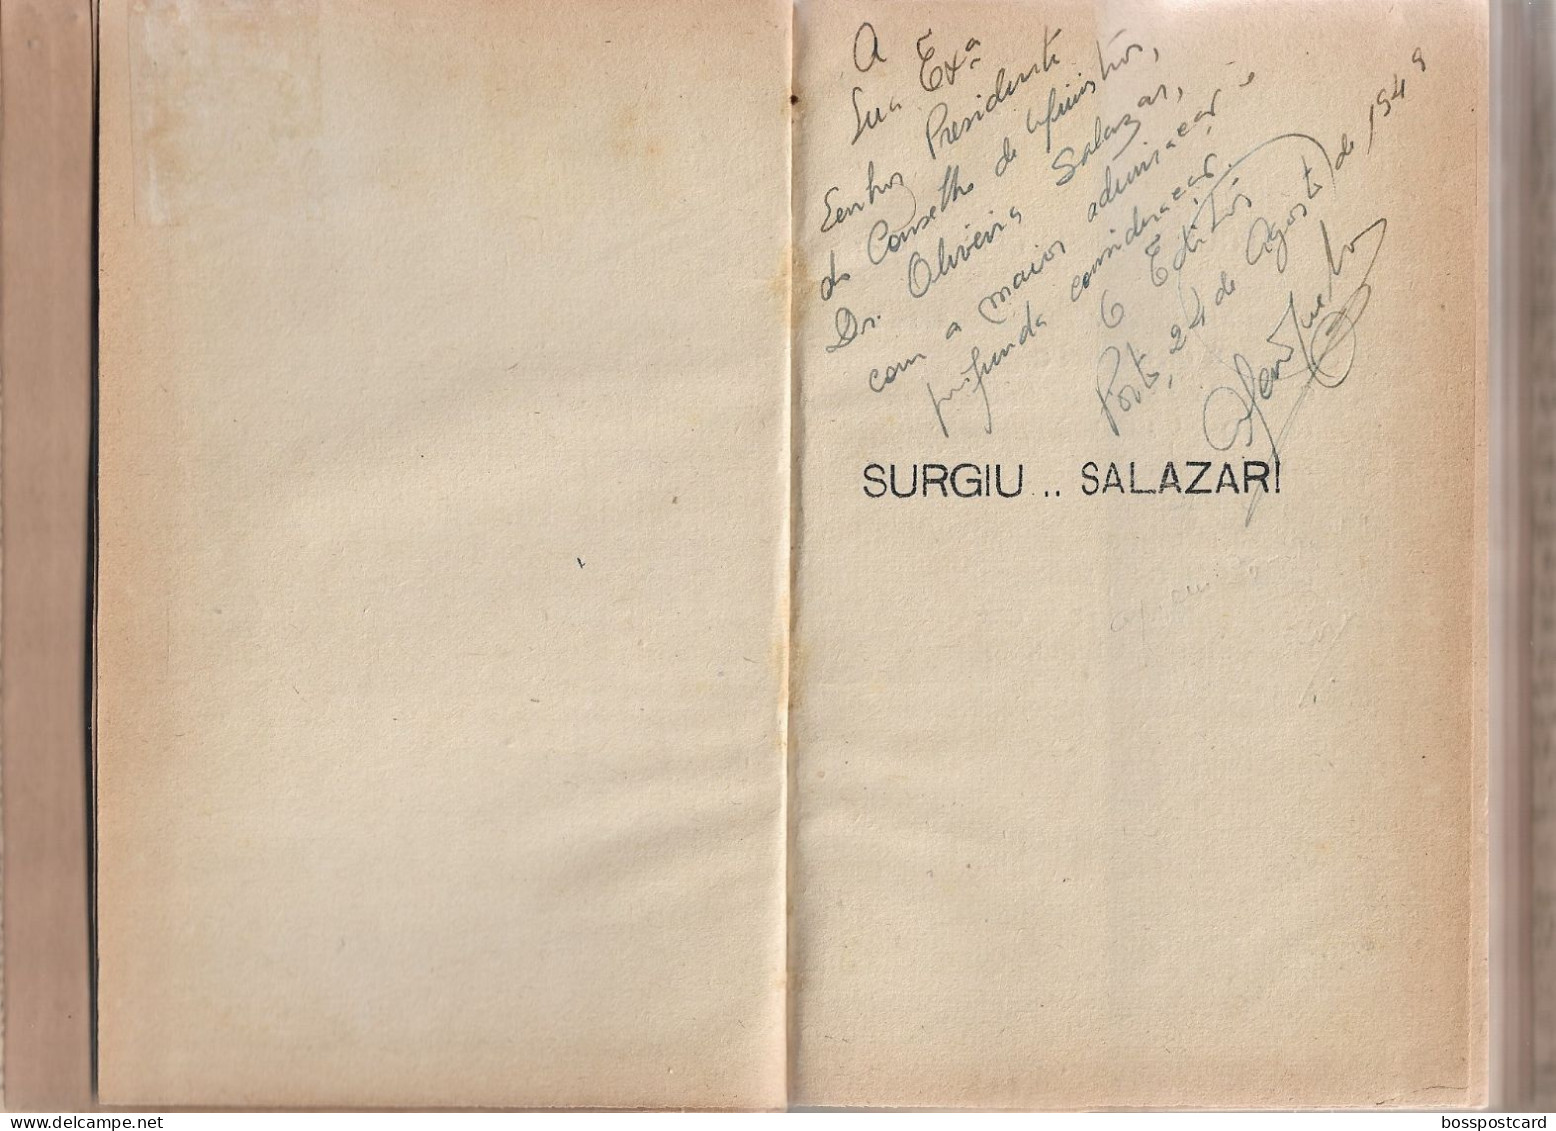 República Portuguesa - Surgiu... Salazar! Ápio Garcia Livro C/ Dedicatória A Salazar Em 24/08/1949 Estado Novo Portugal - Livres Anciens